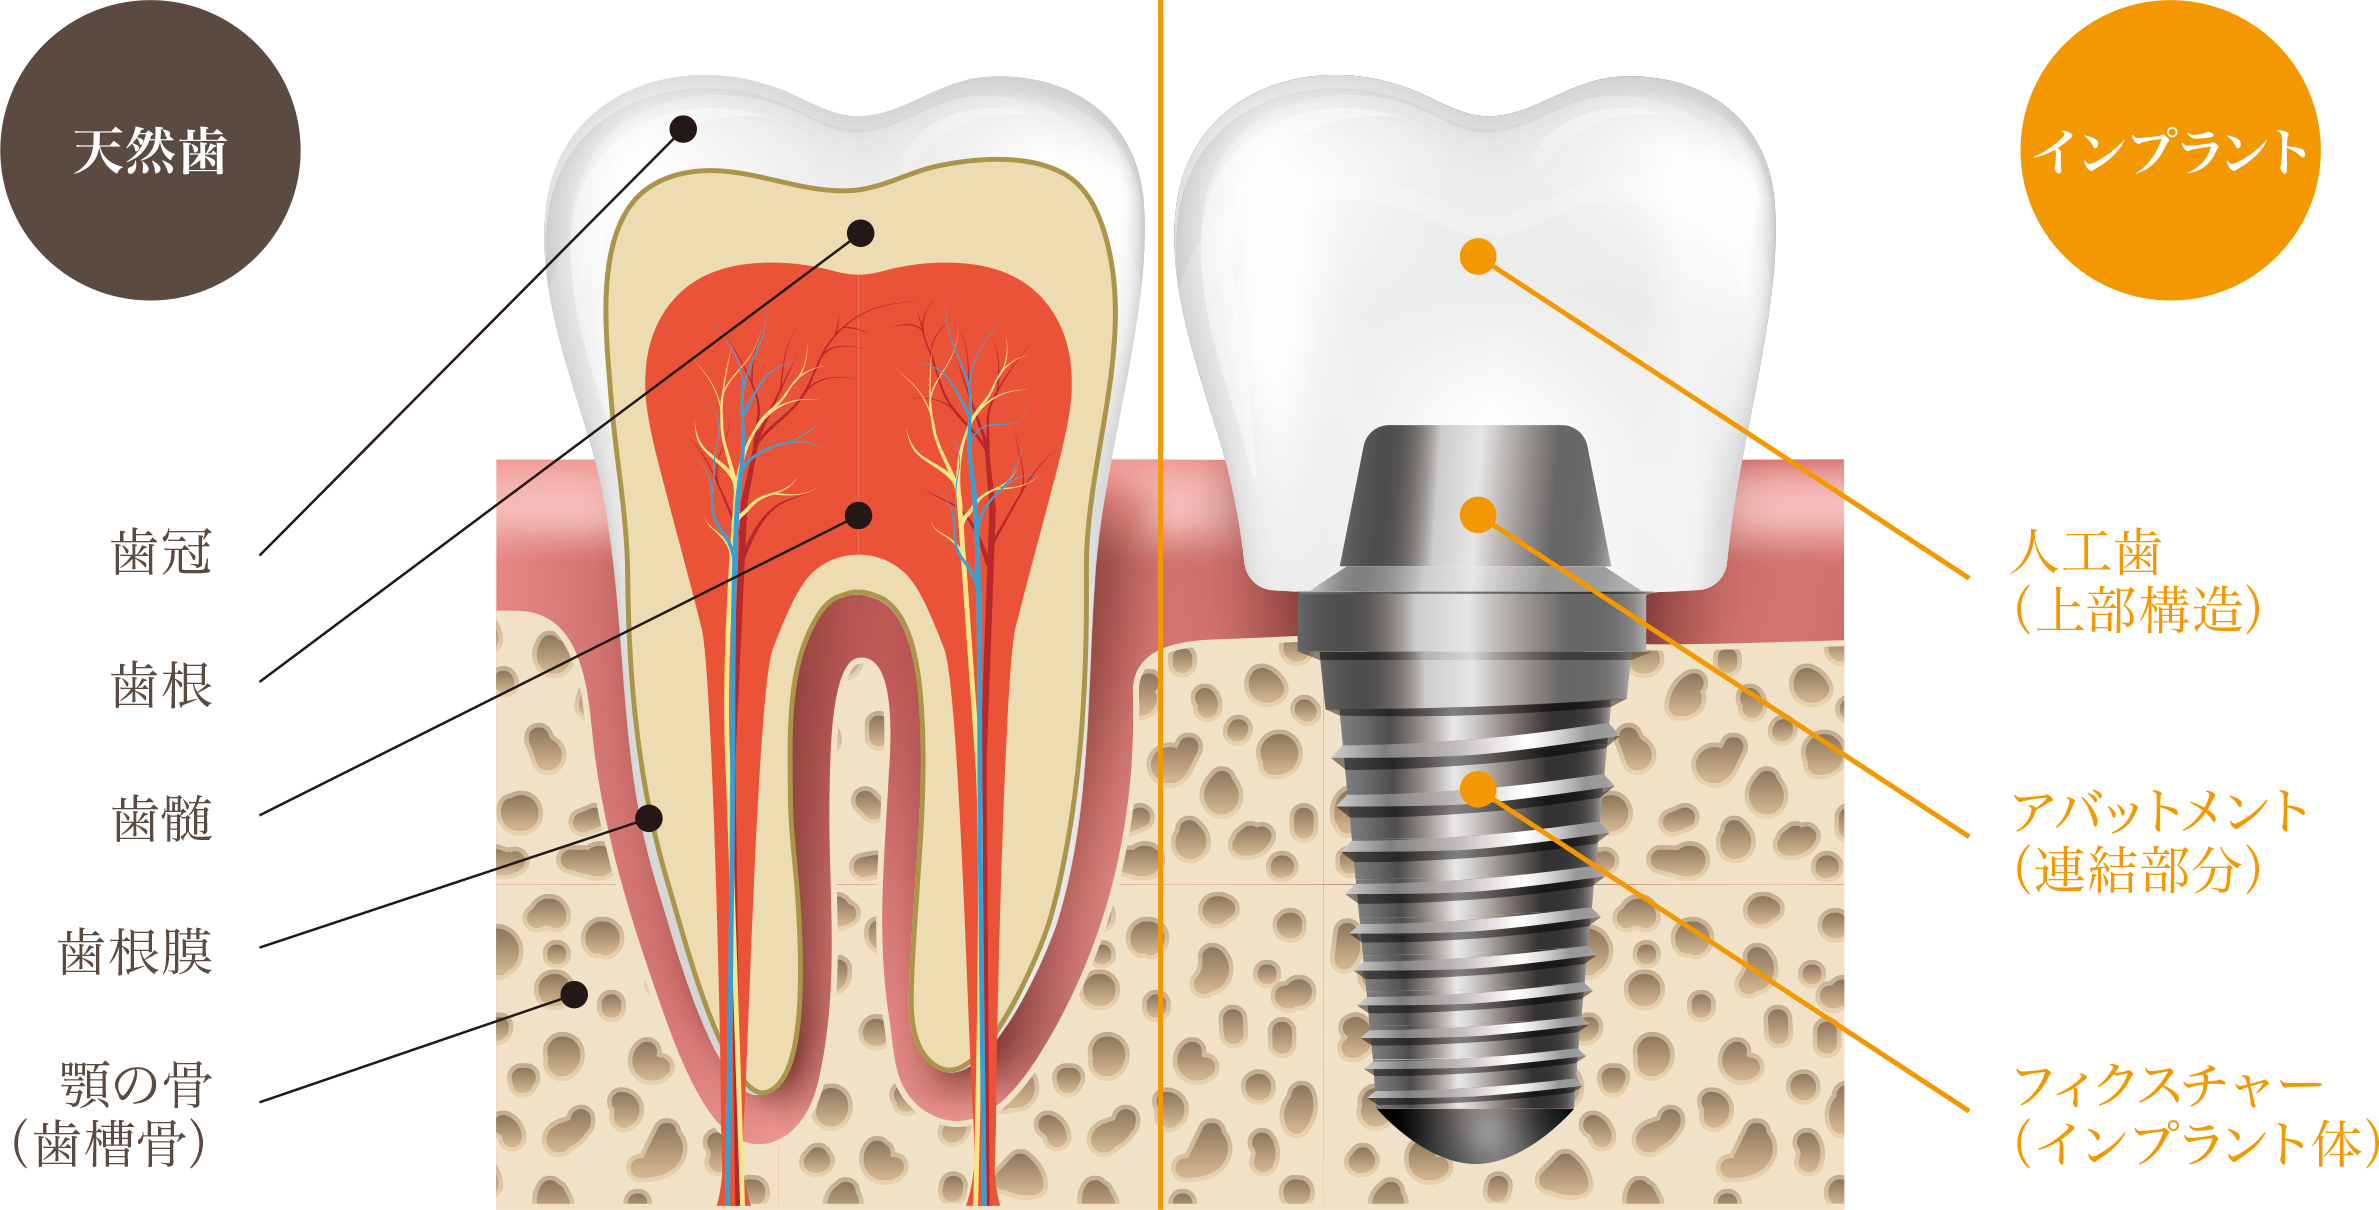 インプラントと天然の歯の比較画像｜久喜の歯医者 いしはた歯科クリニック